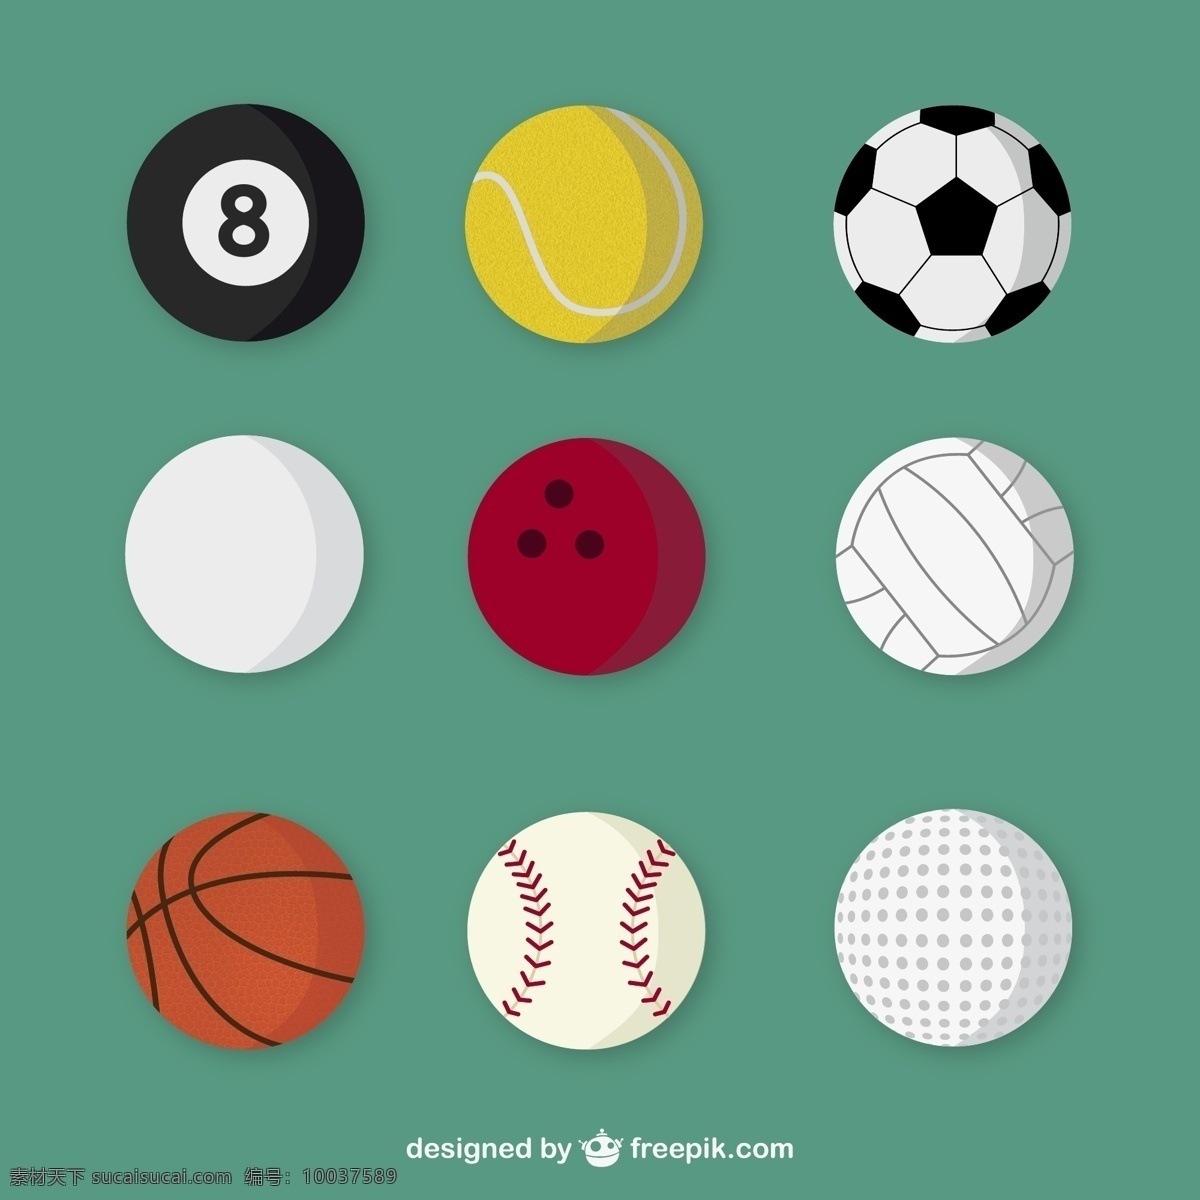 精美球具 设计矢量素材 台球 棒球 足球 排球 保龄球 网球 高尔夫球 体育用品 球具 平面素材